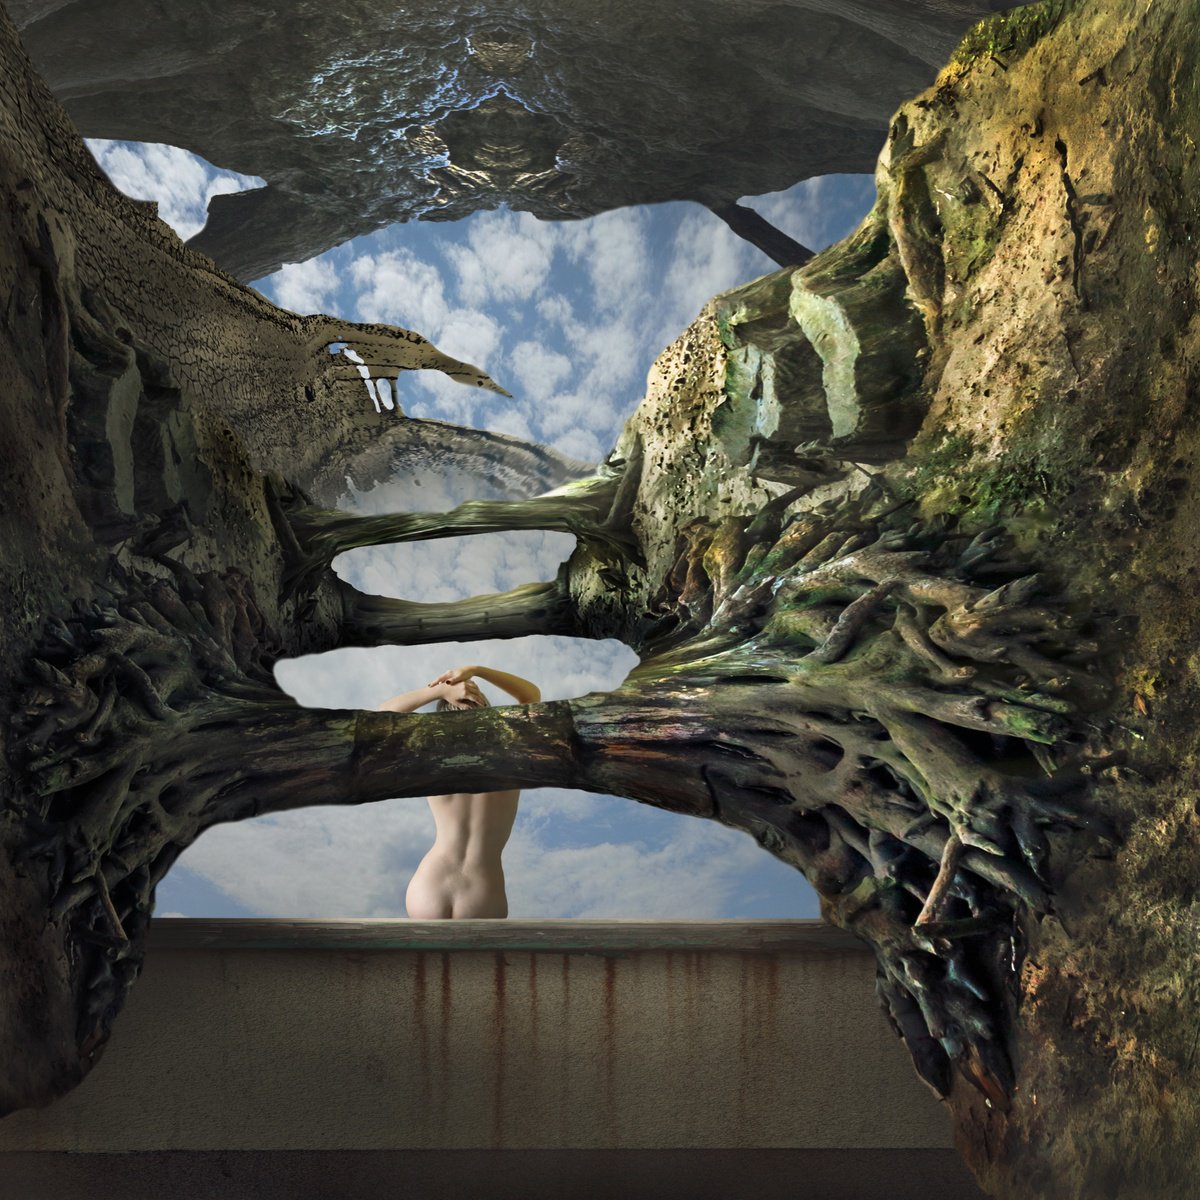 Roots of Fantasy by Dariusz Klimczak